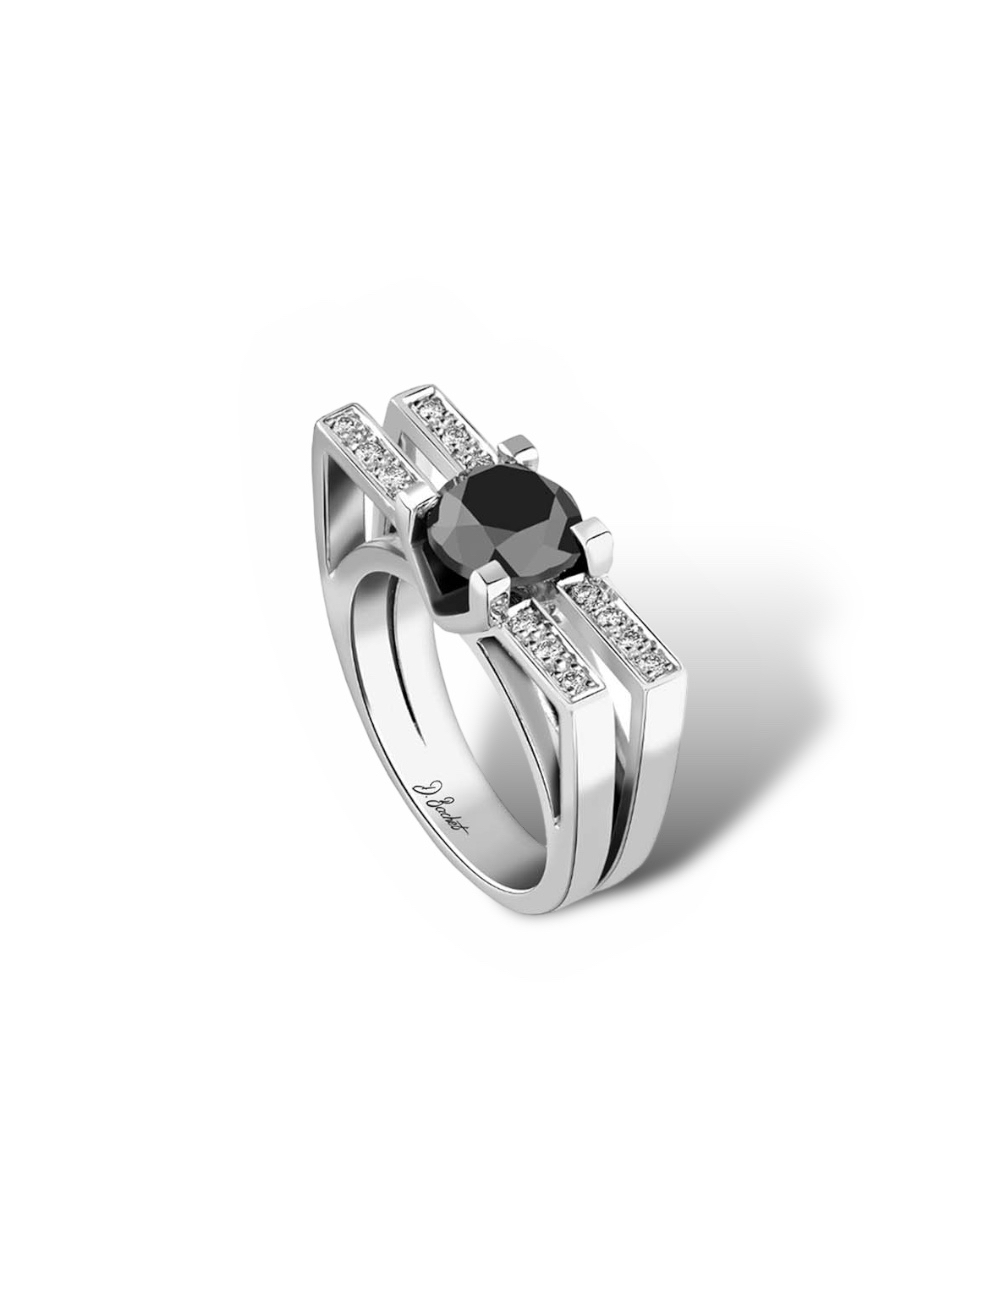 Bague en platine avec diamant noir entouré de diamants blancs, reflet de l'audace architecturale de New York.